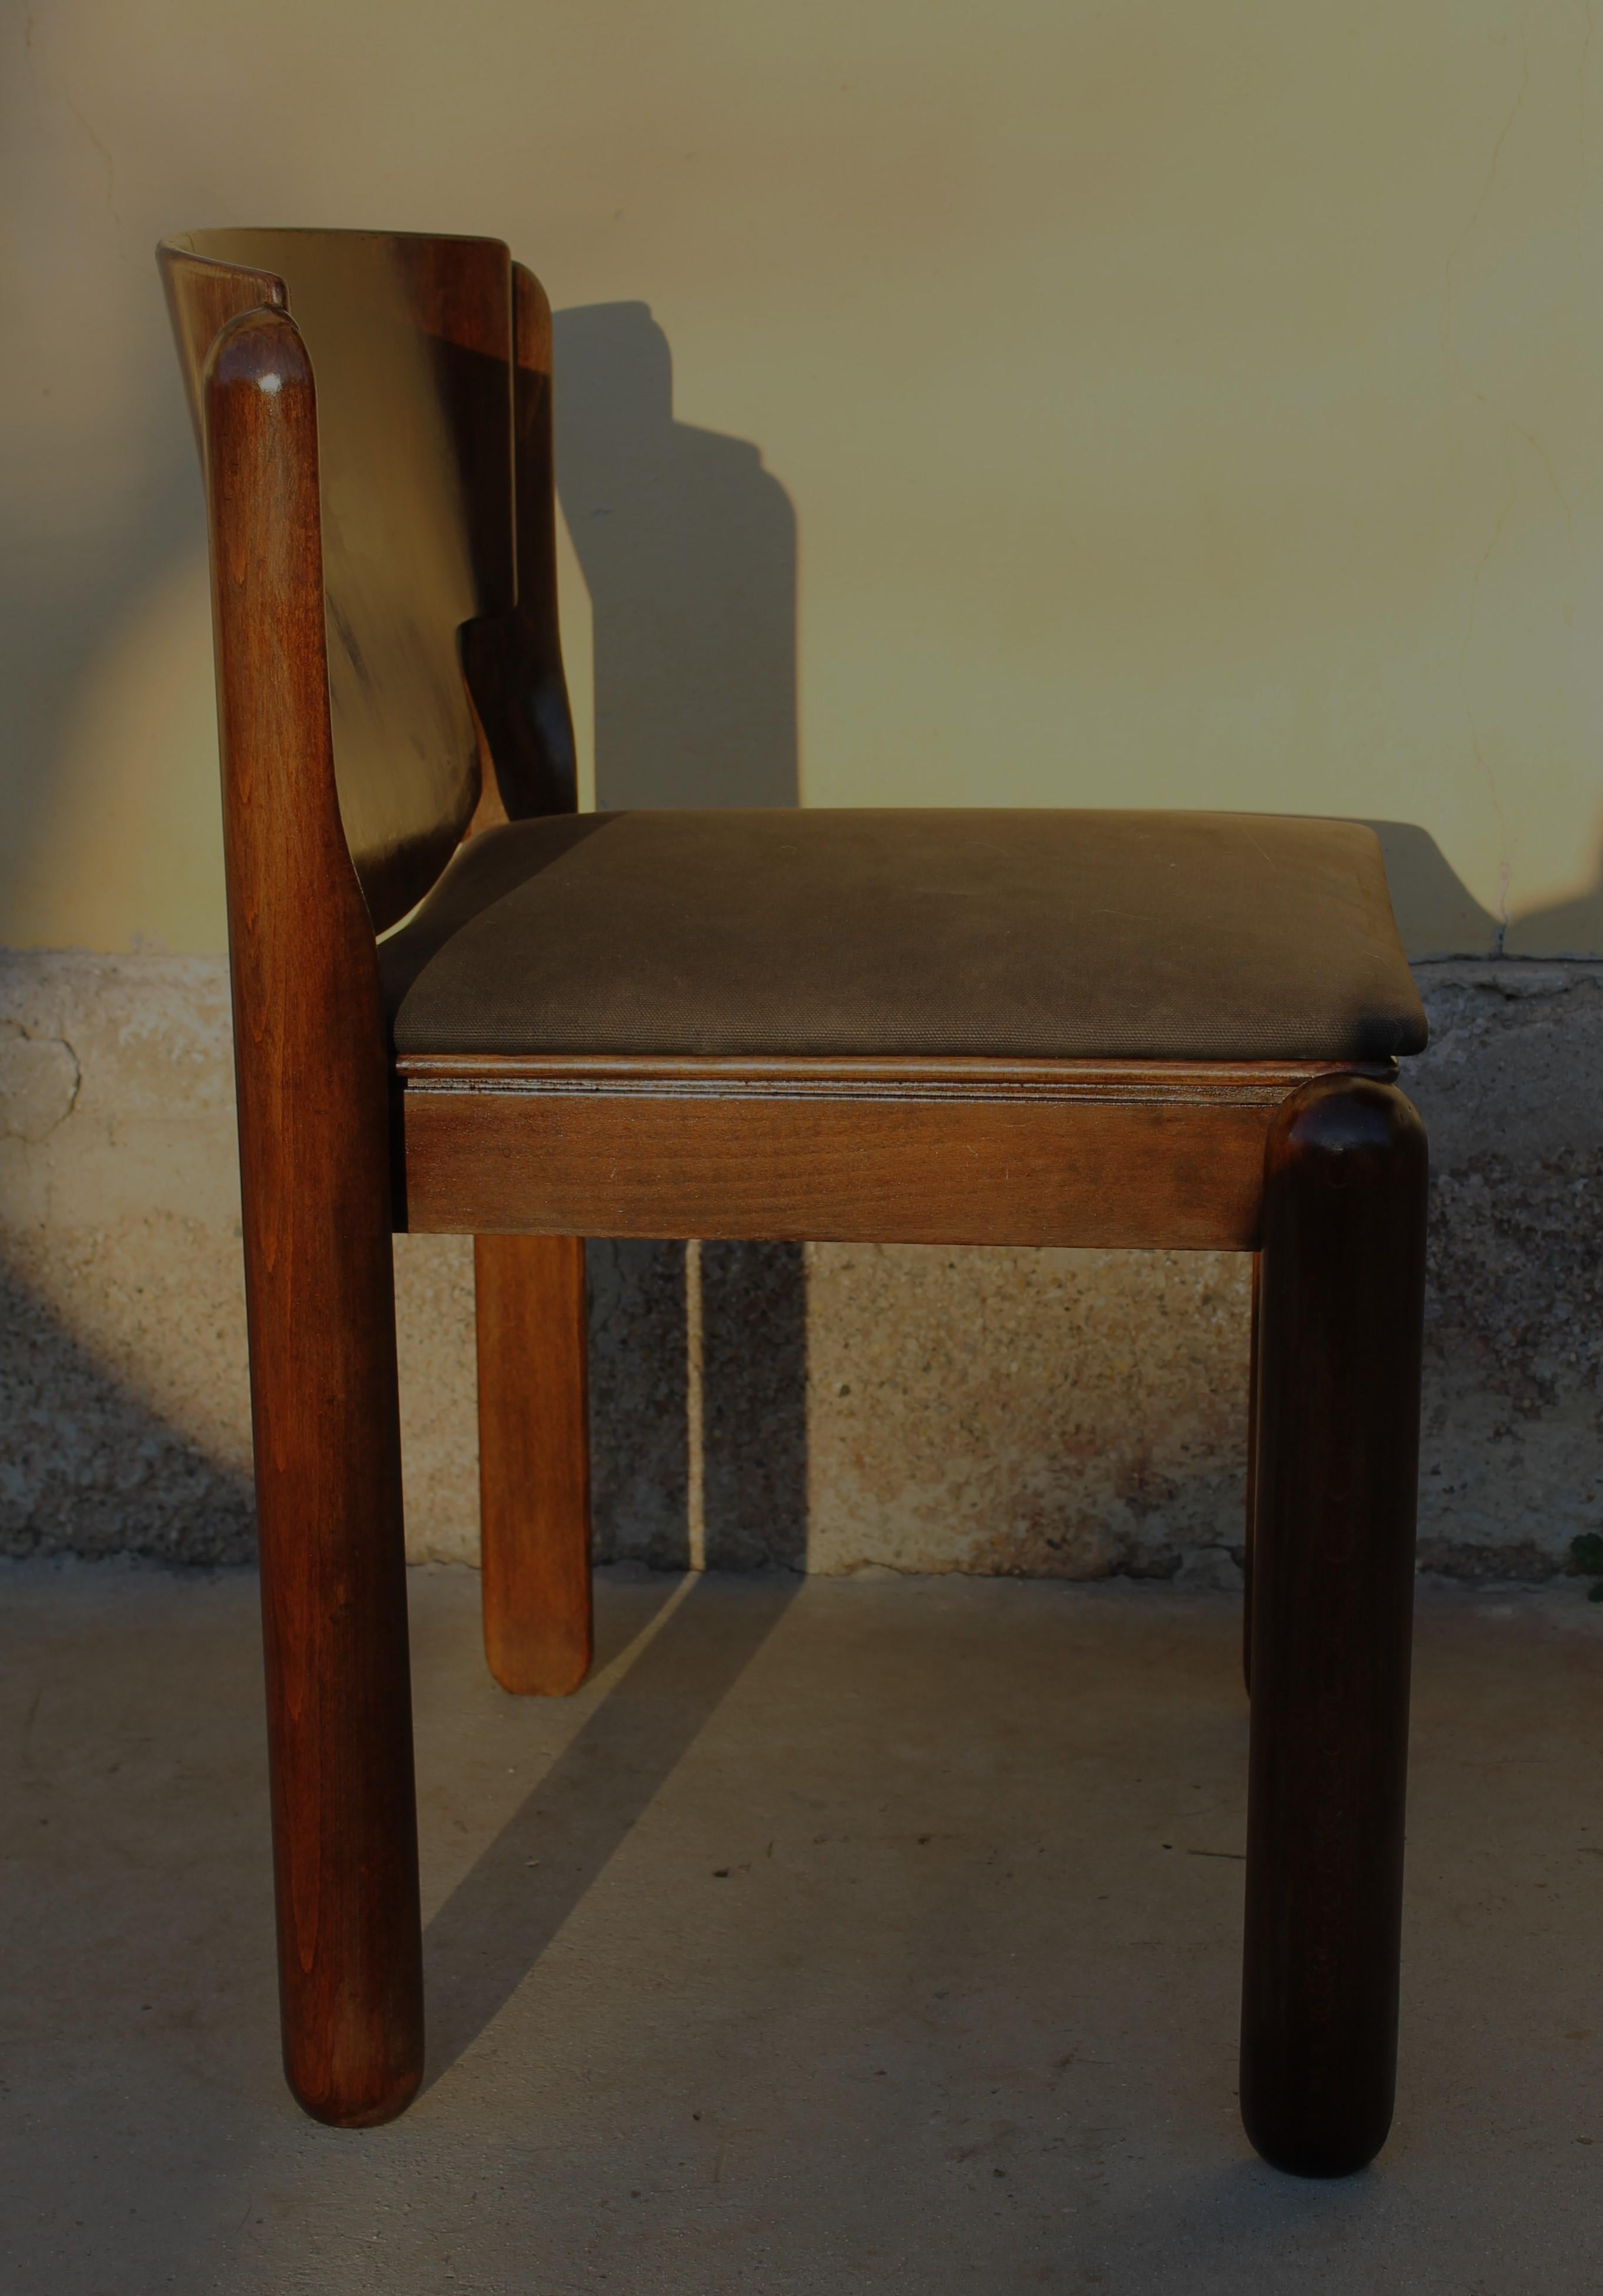  Cassina-Stuhl aus Nussbaumholz Mod. 122 von Vico Magistretti, Italien, 60er Jahre (sechs Stück verfügbar)

Die Stühle des Modells 122 sind eine Kreation des berühmten italienischen Designers Vico Magistretti, der für seine Fähigkeit bekannt ist,